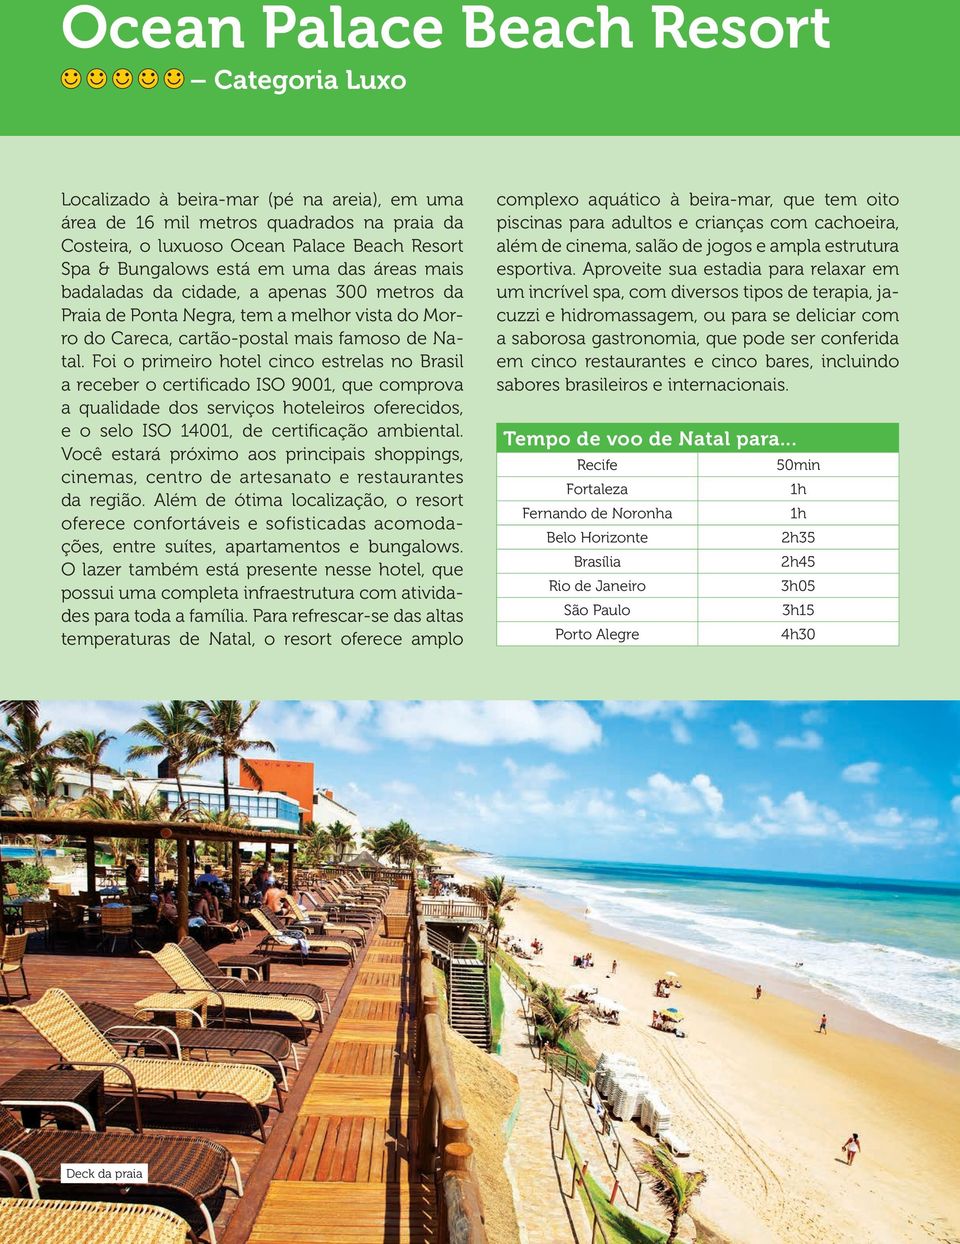 Foi o primeiro hotel cinco estrelas no Brasil a receber o certificado ISO 9001, que comprova a qualidade dos serviços hoteleiros oferecidos, e o selo ISO 14001, de certificação ambiental.